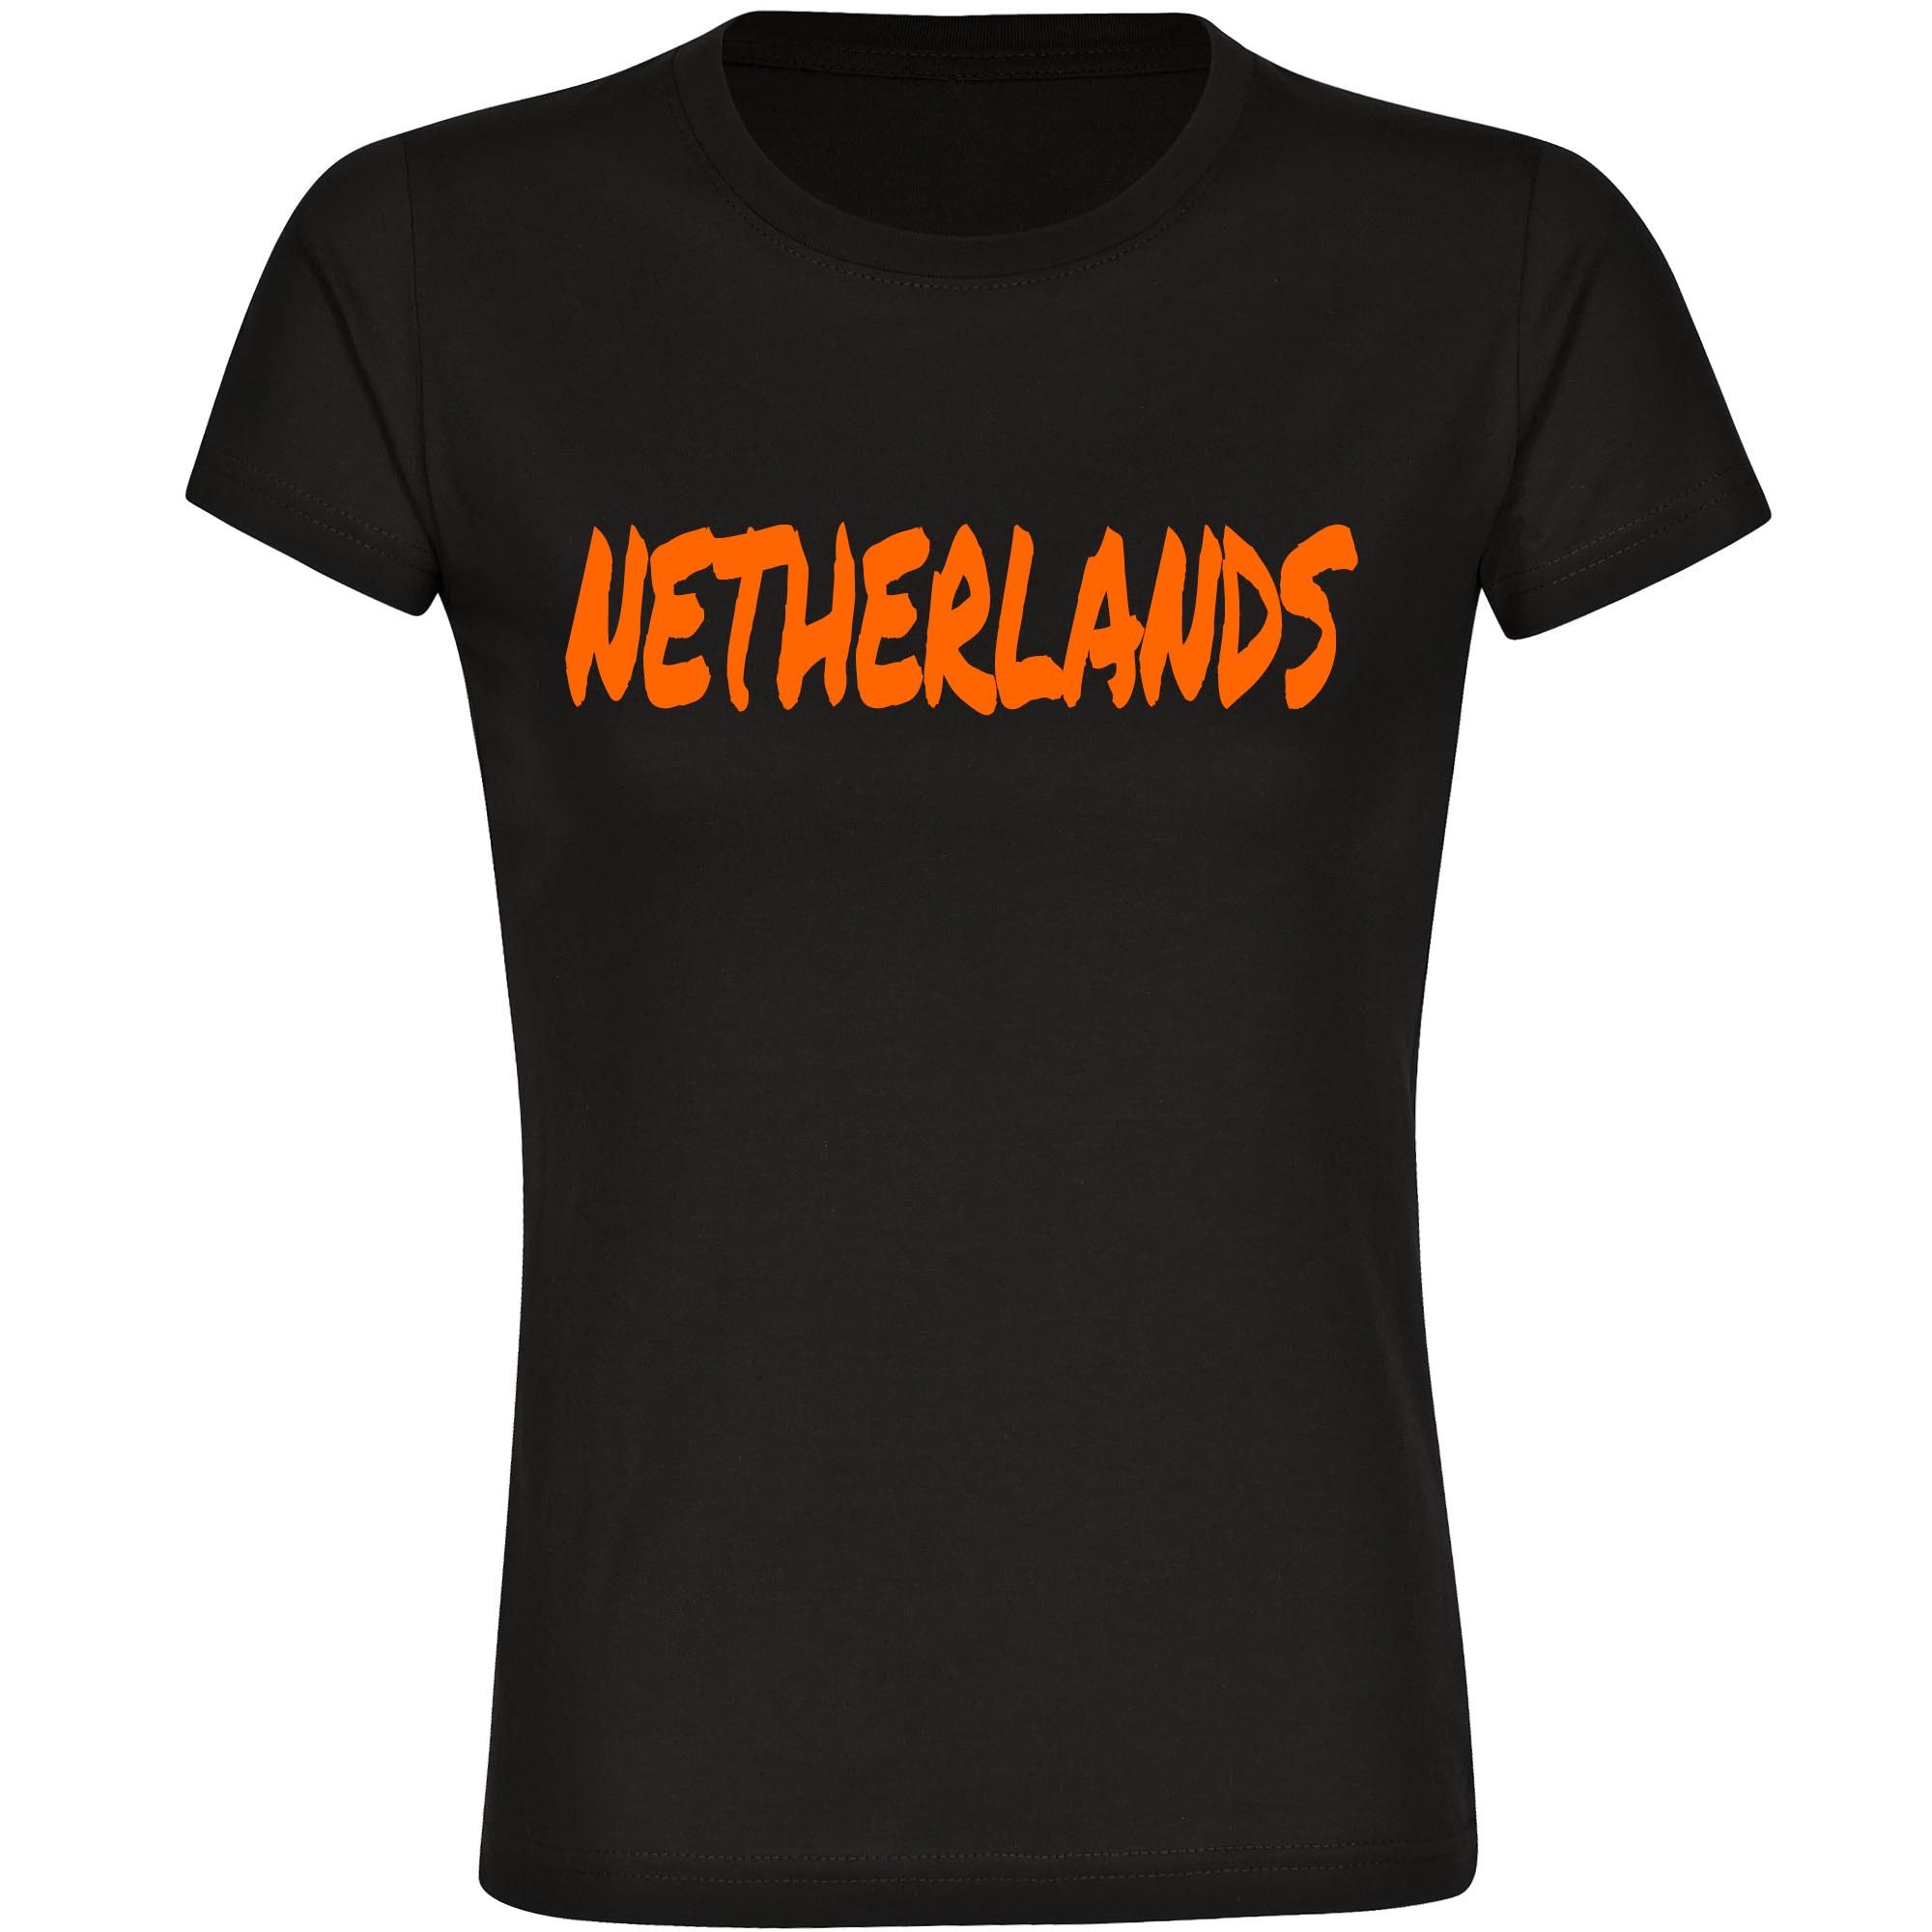 multifanshop T-Shirt Damen Netherlands - Textmarker - Frauen